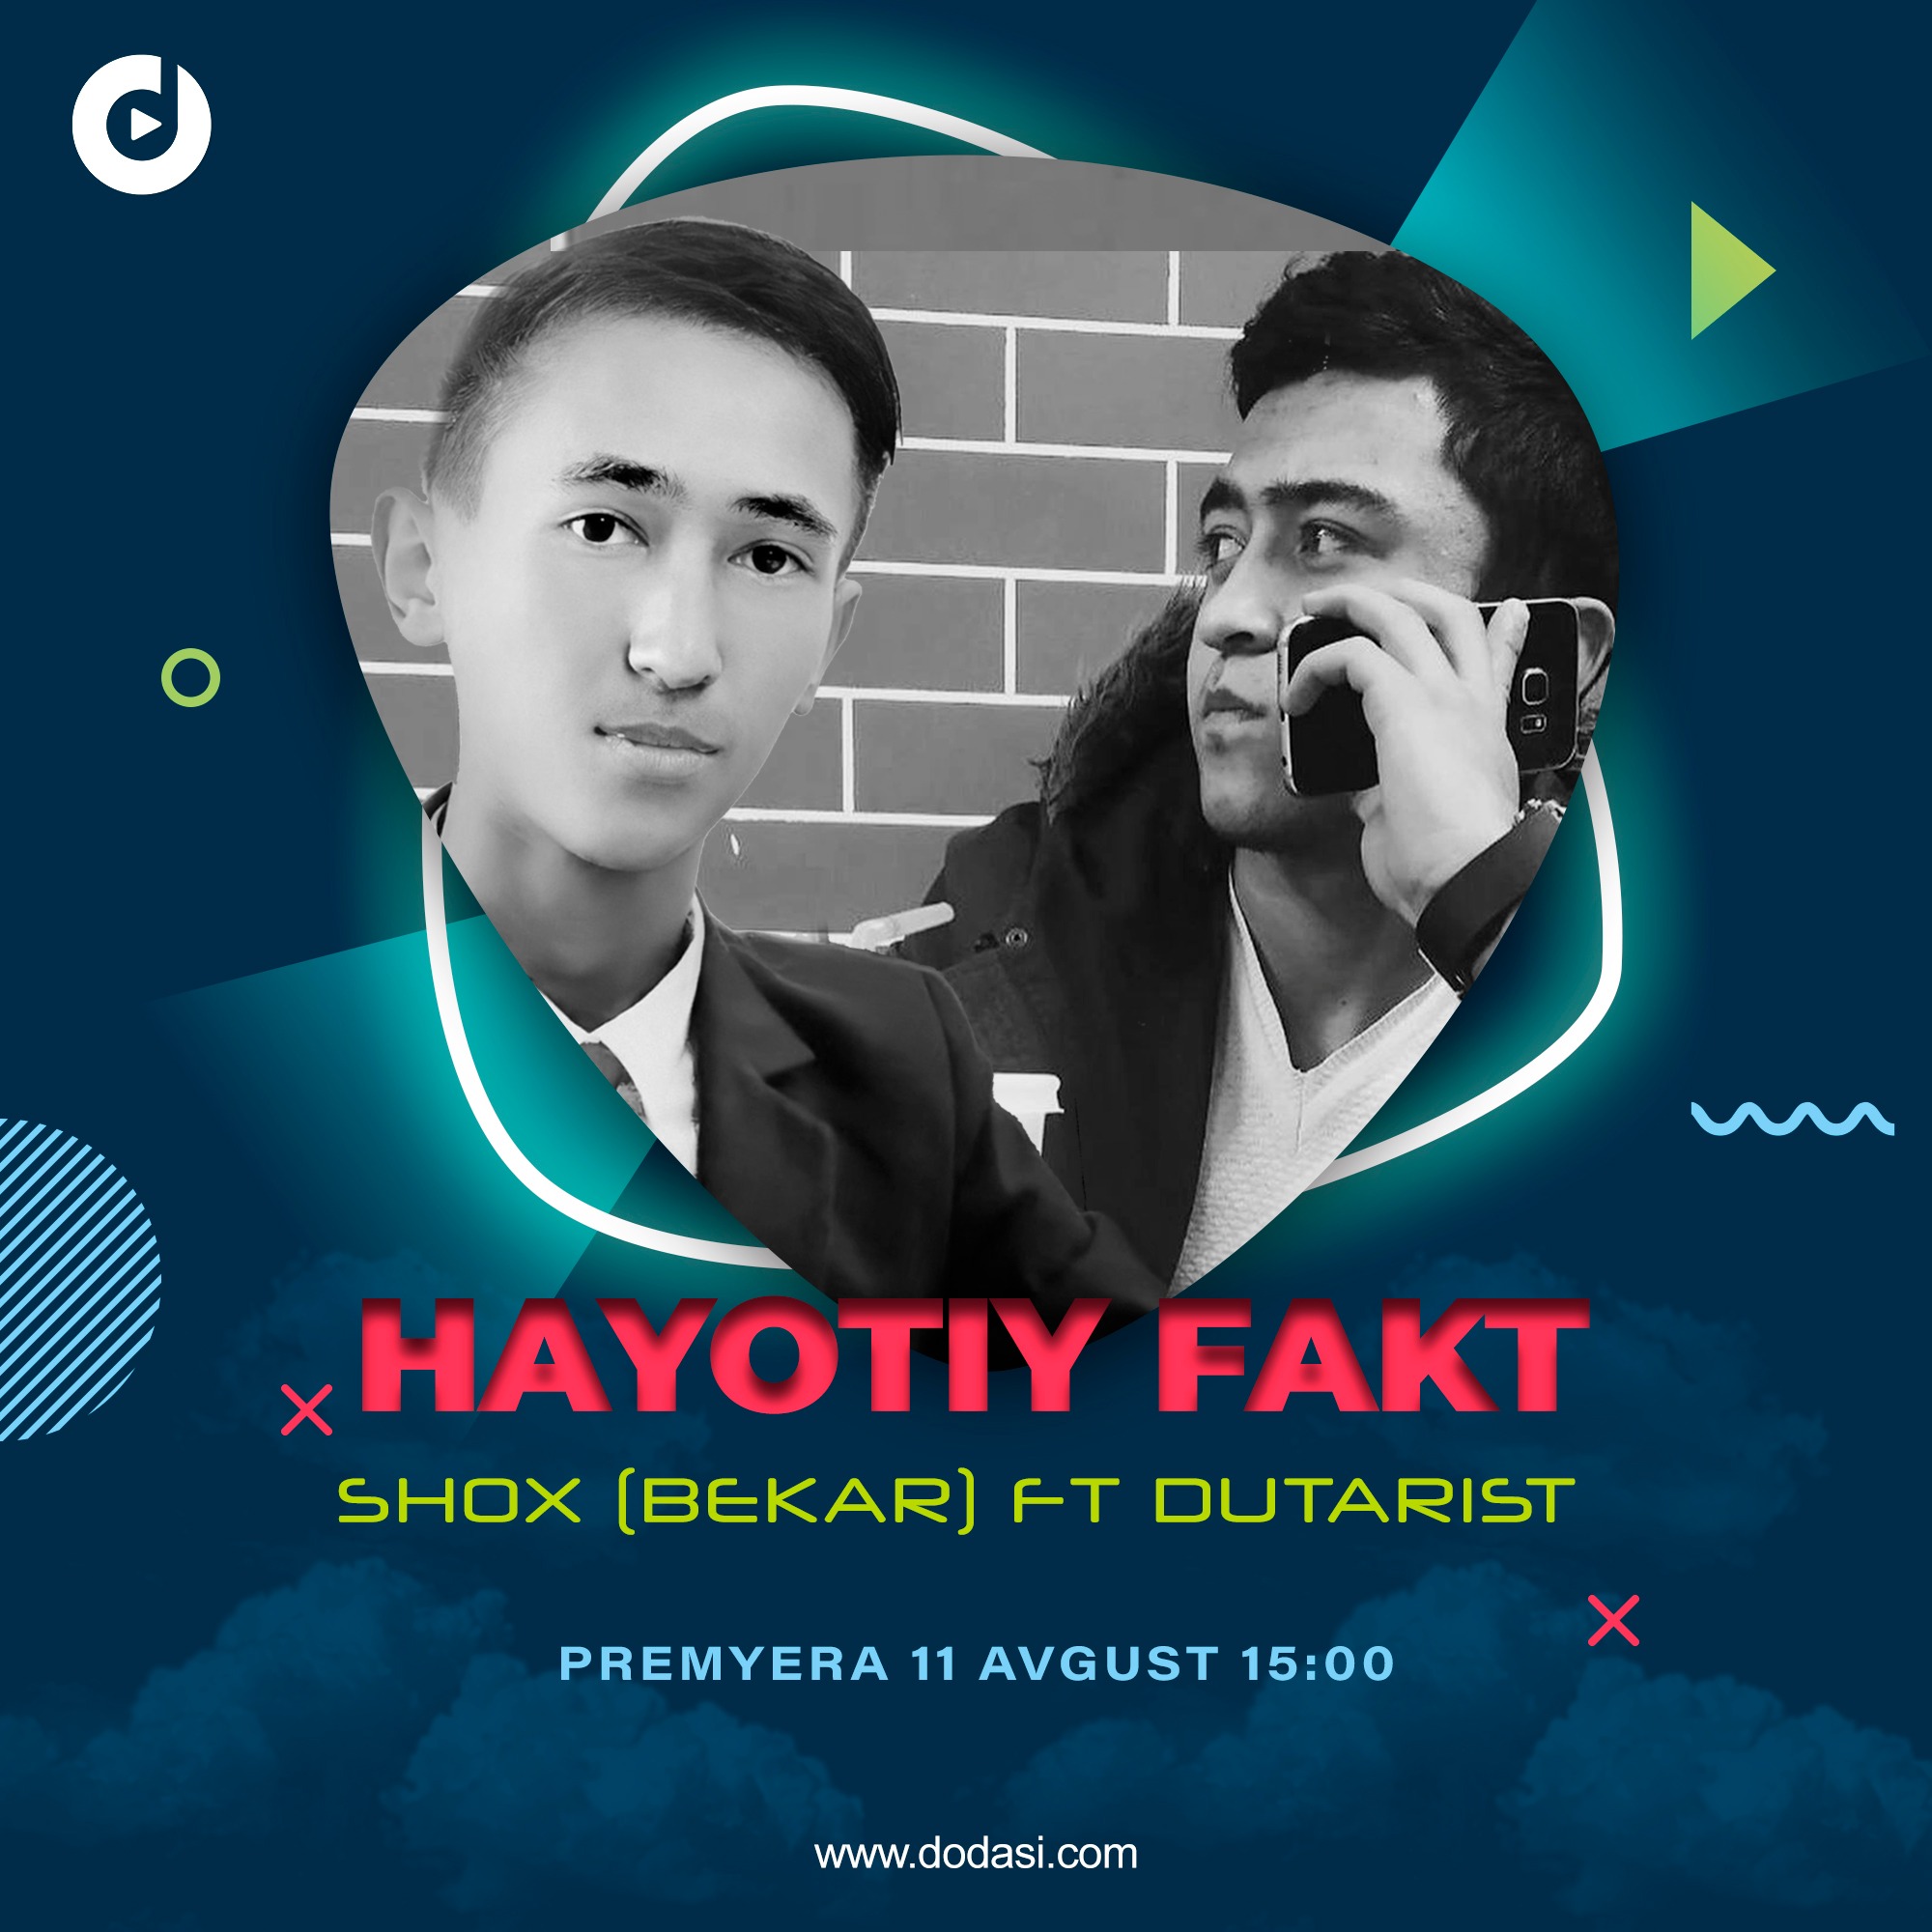 Shox (Bekar) ft Dutarist - Hayotiy fakt